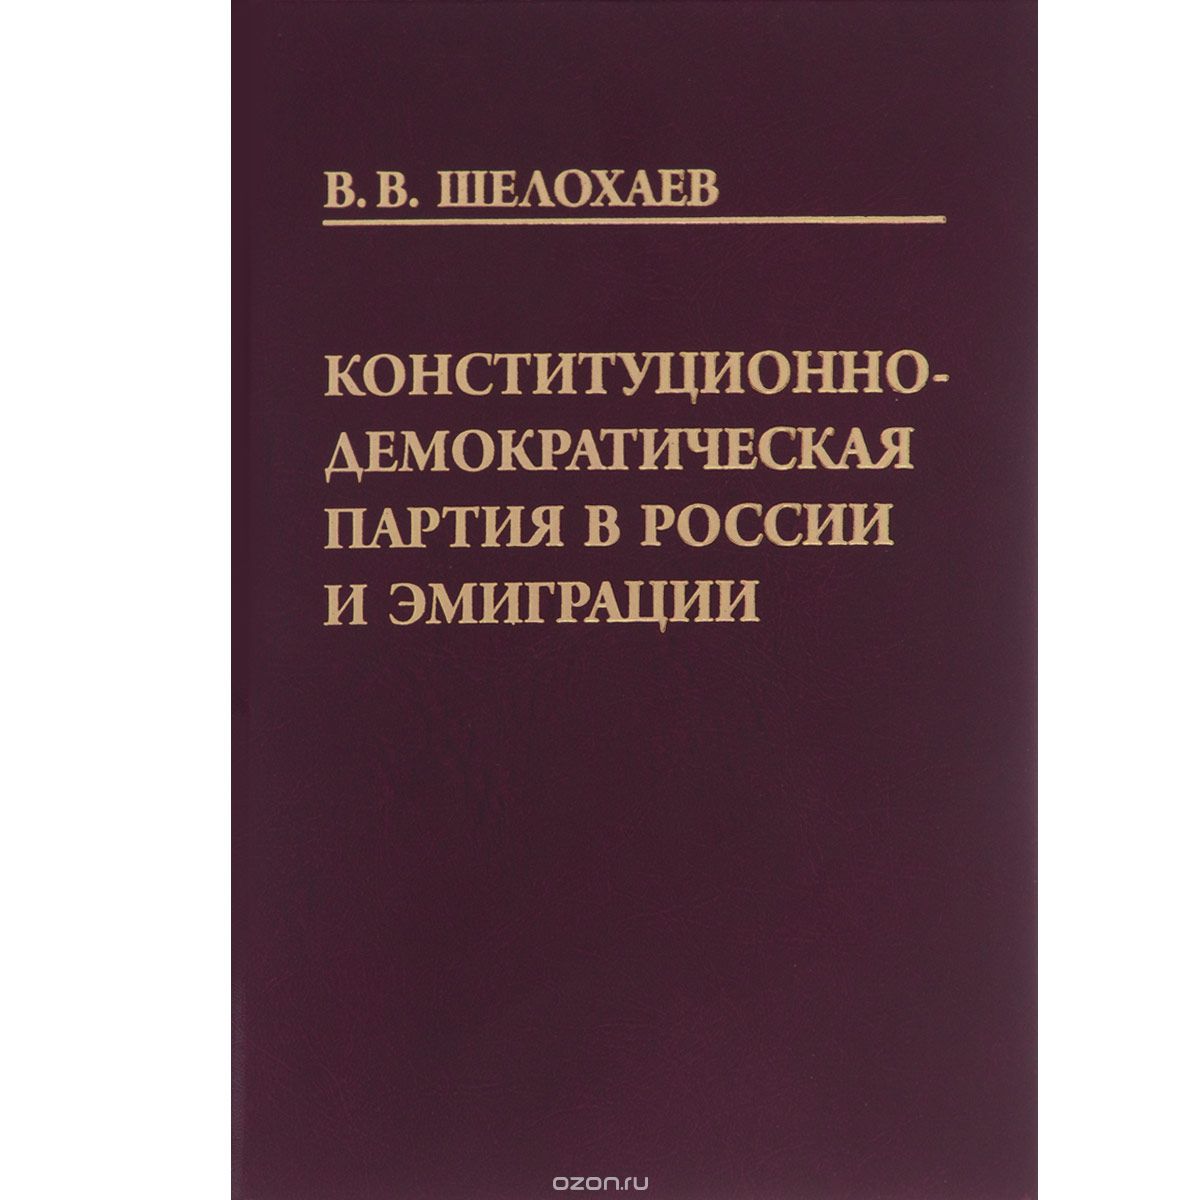 Конституционно-демократическая партия в России и эмиграции, В. В. Шелохаев